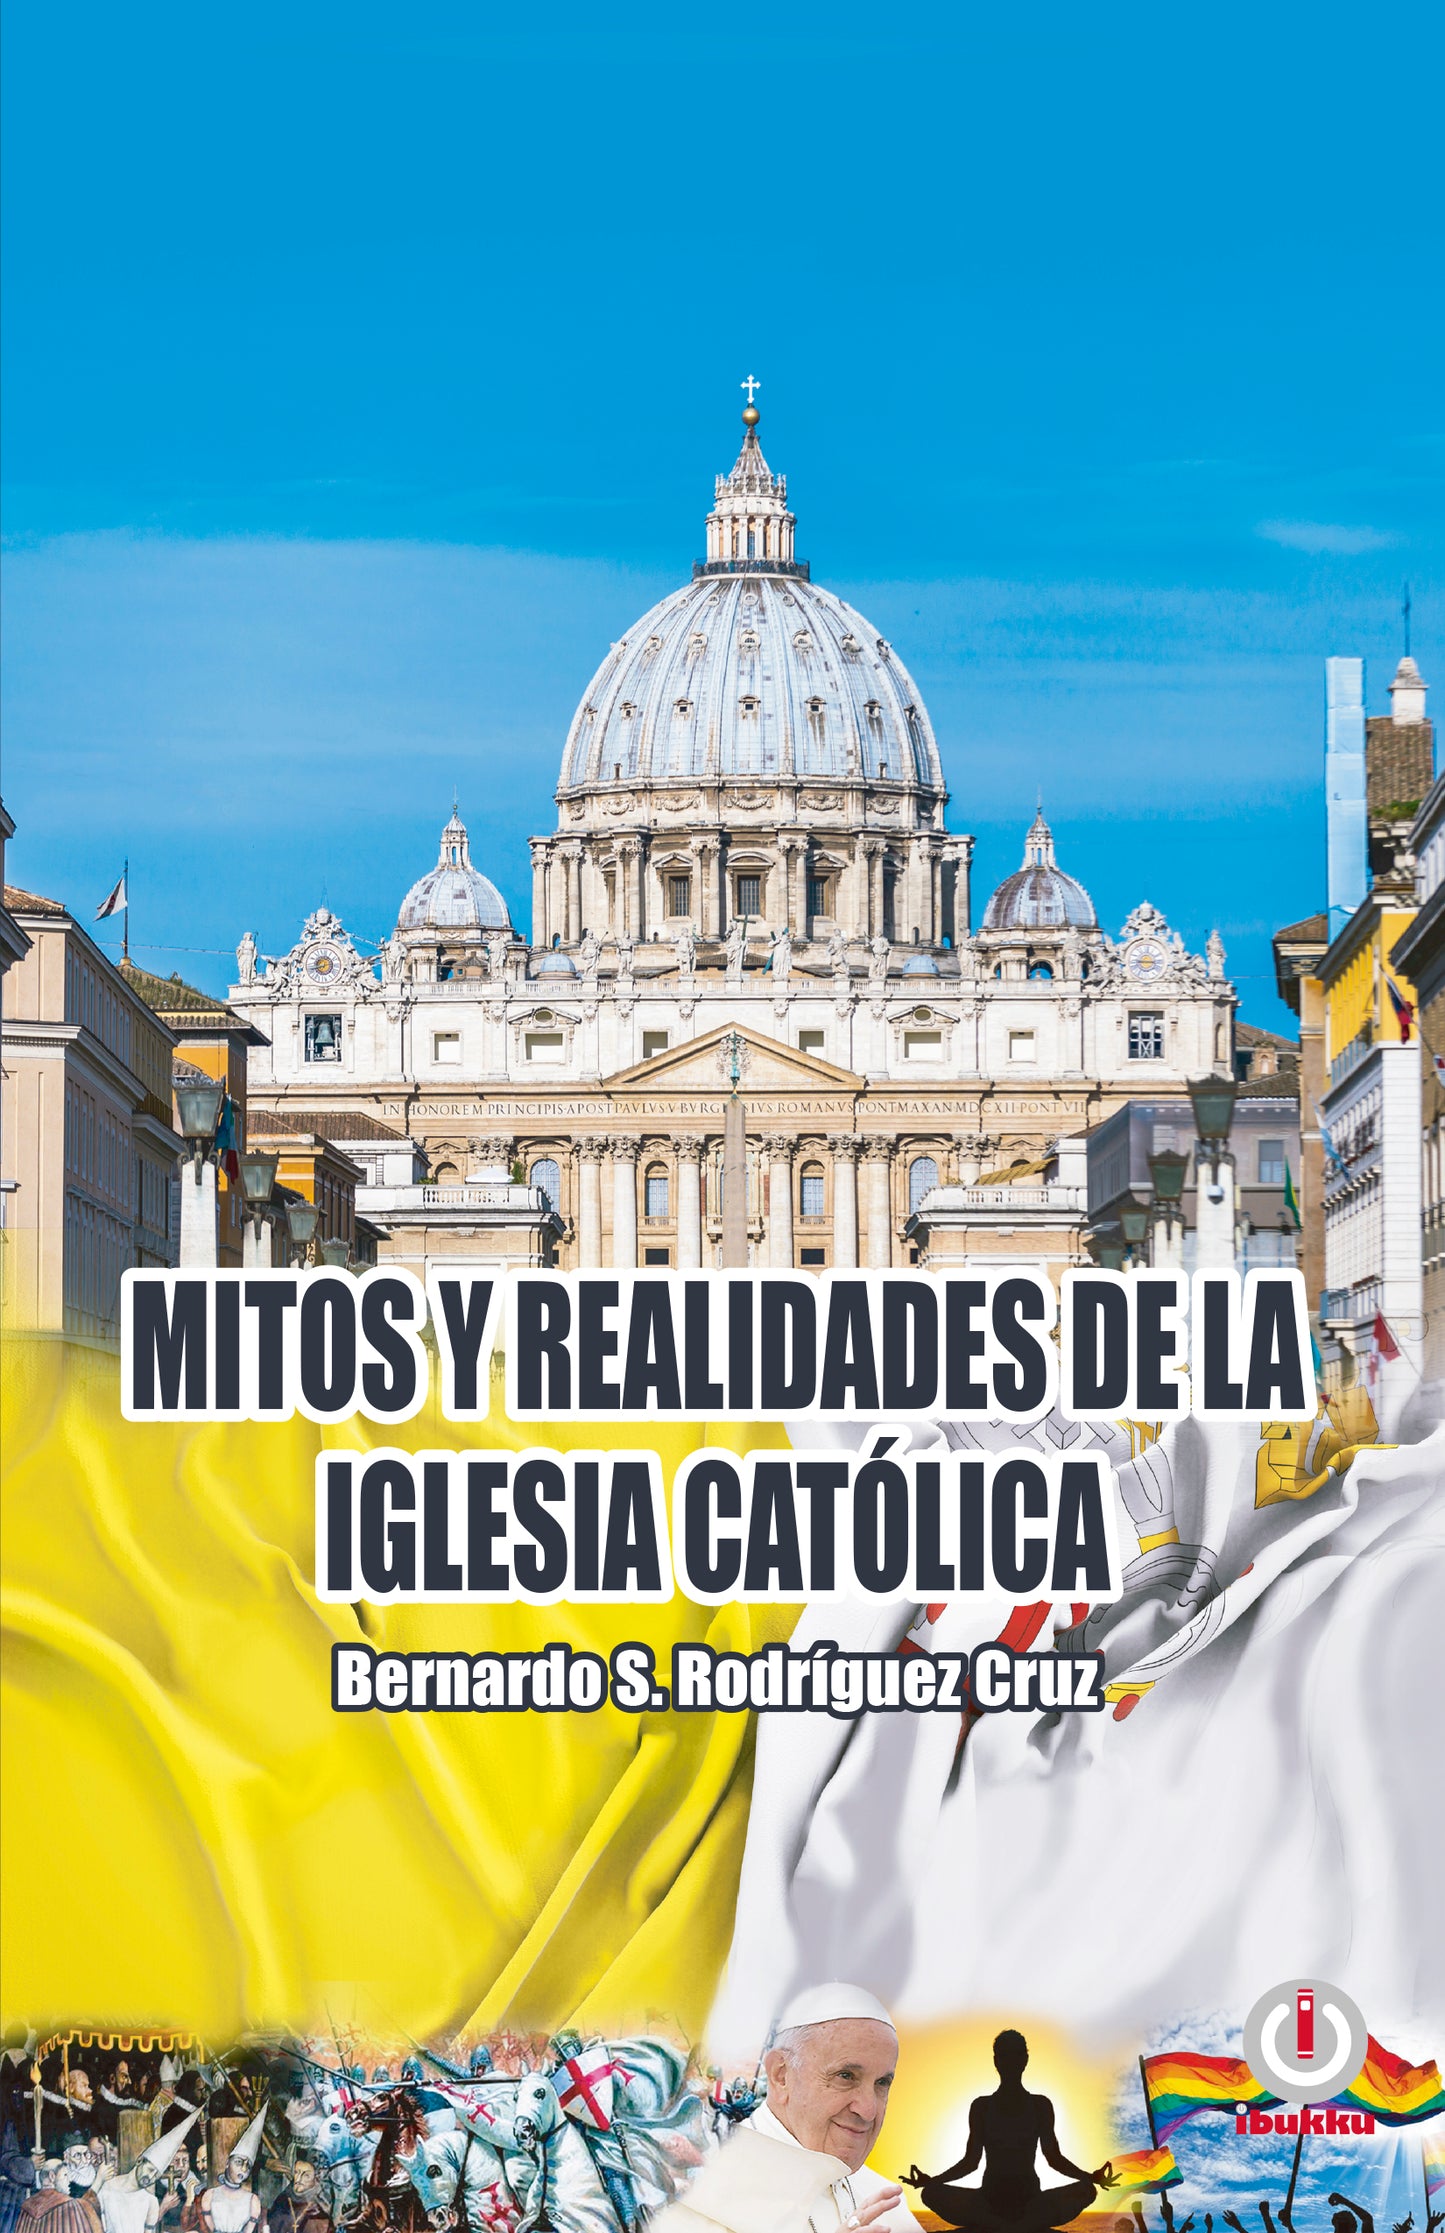 Mitos y realidades de la iglesia católica (Impreso)